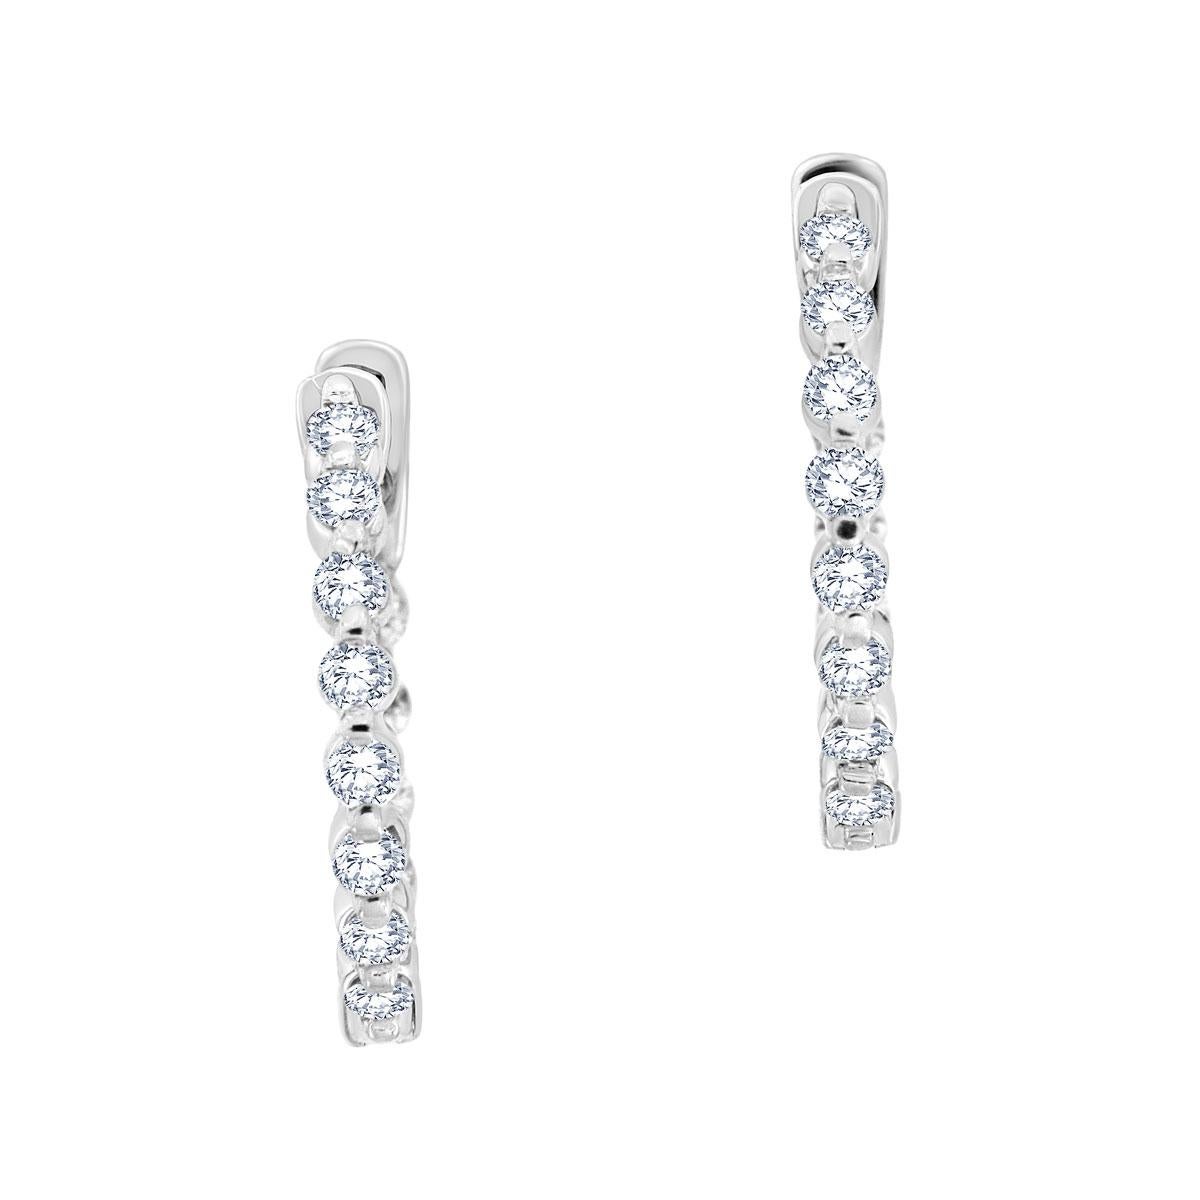 5 carat diamond hoop earrings